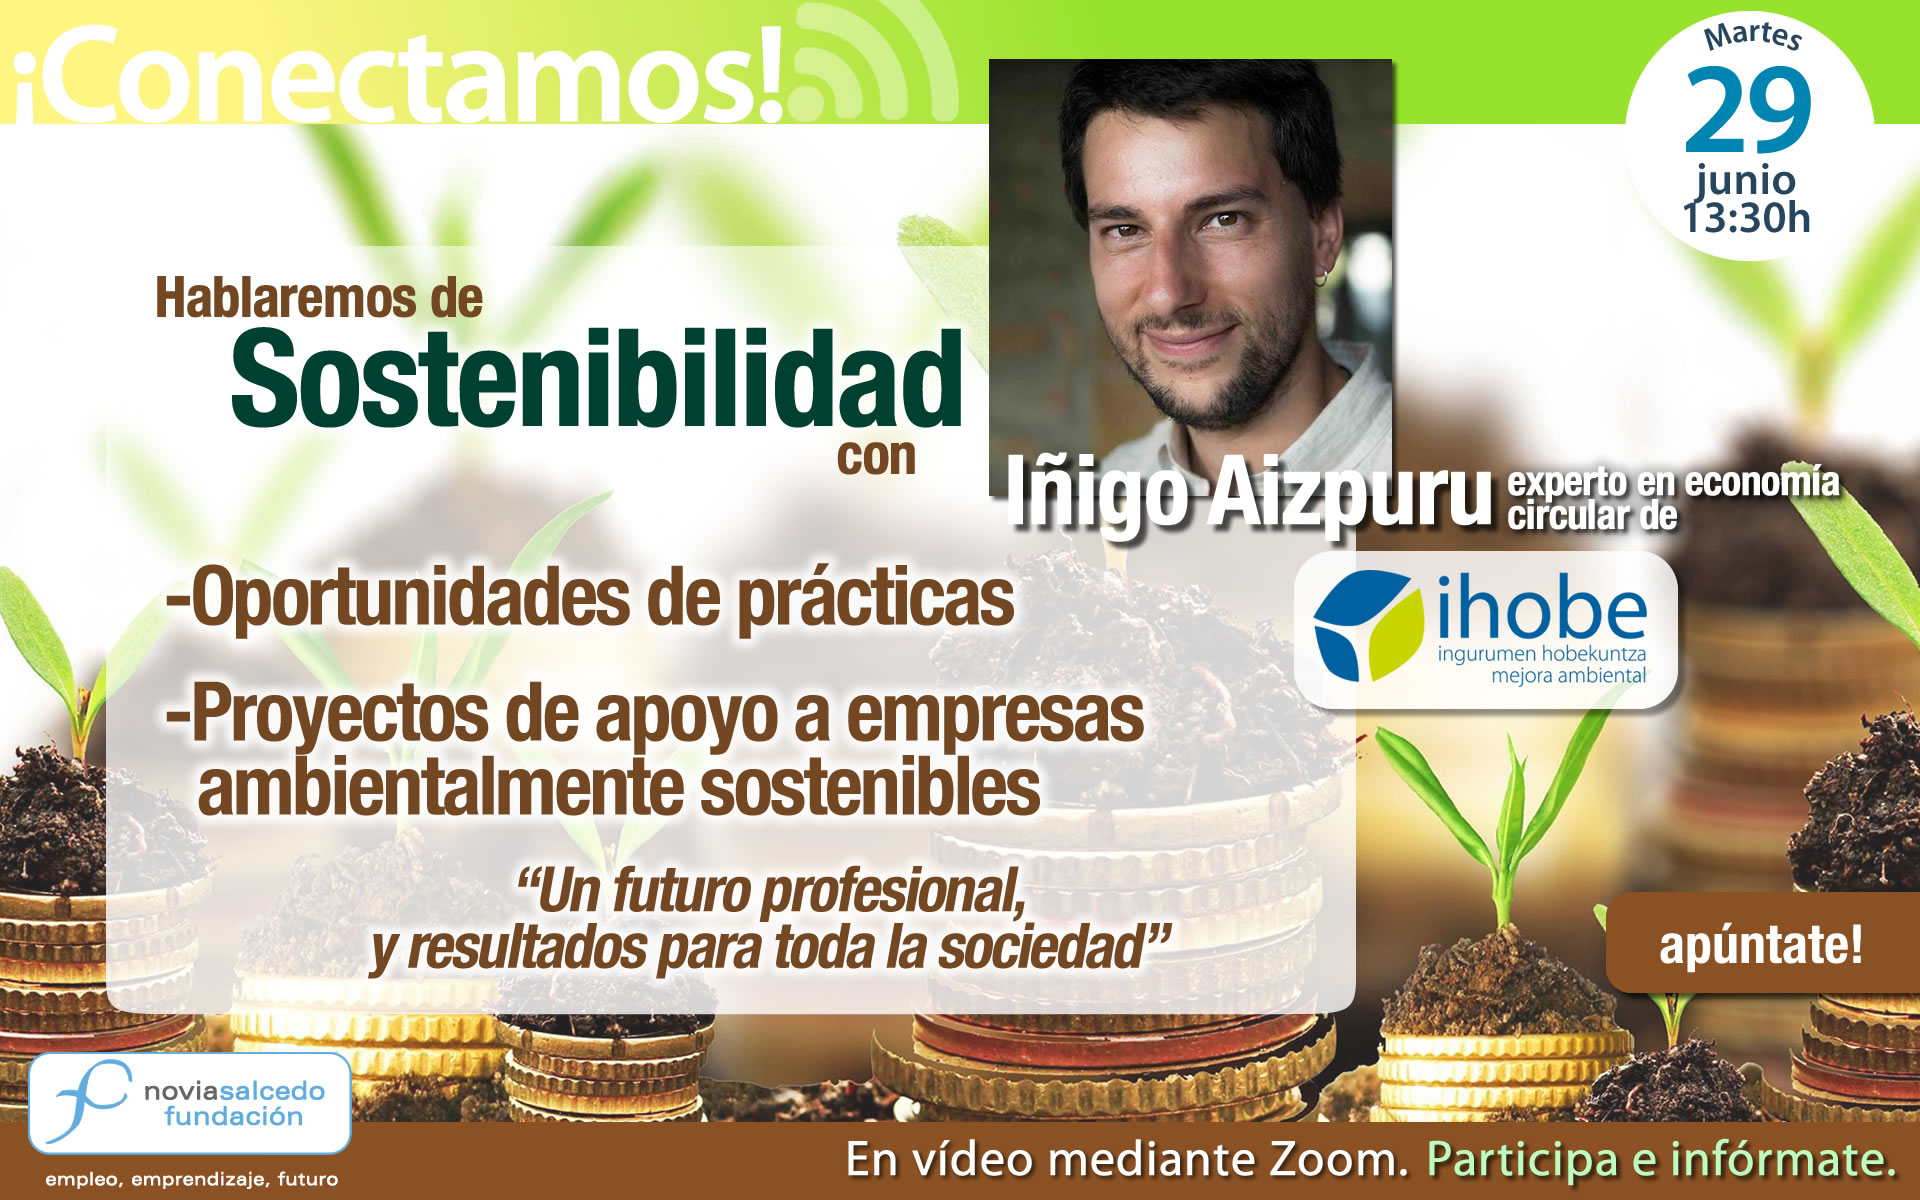 Conectamos con Iñigo Aizpuru de Ihobe. Hablaremos de Sostenibilidad, oportunidades de prácticas y proyectos en empresas ambientalmente sostenibles.